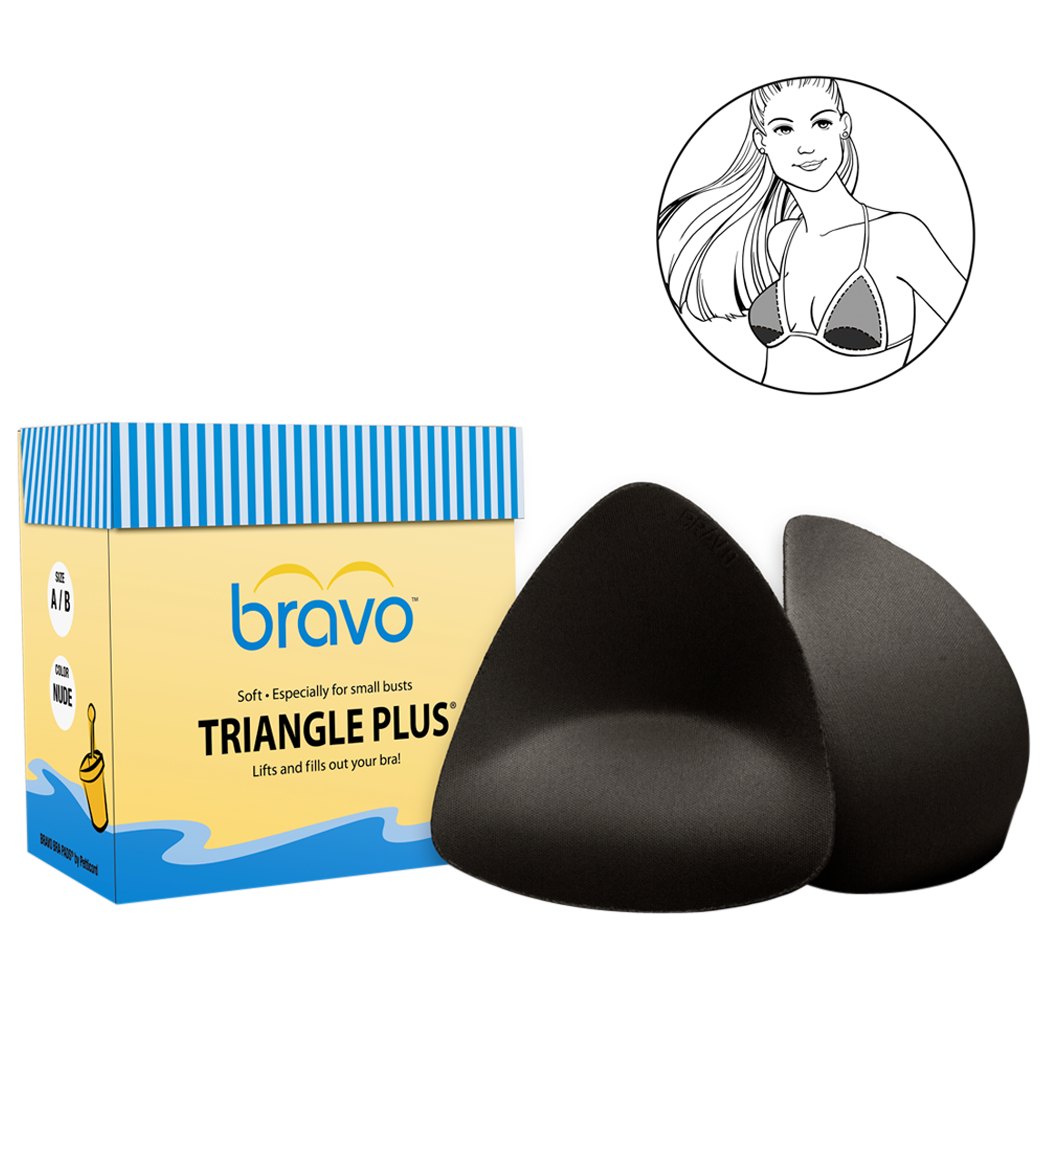 Bravo Triangle Plus Bra Pads at